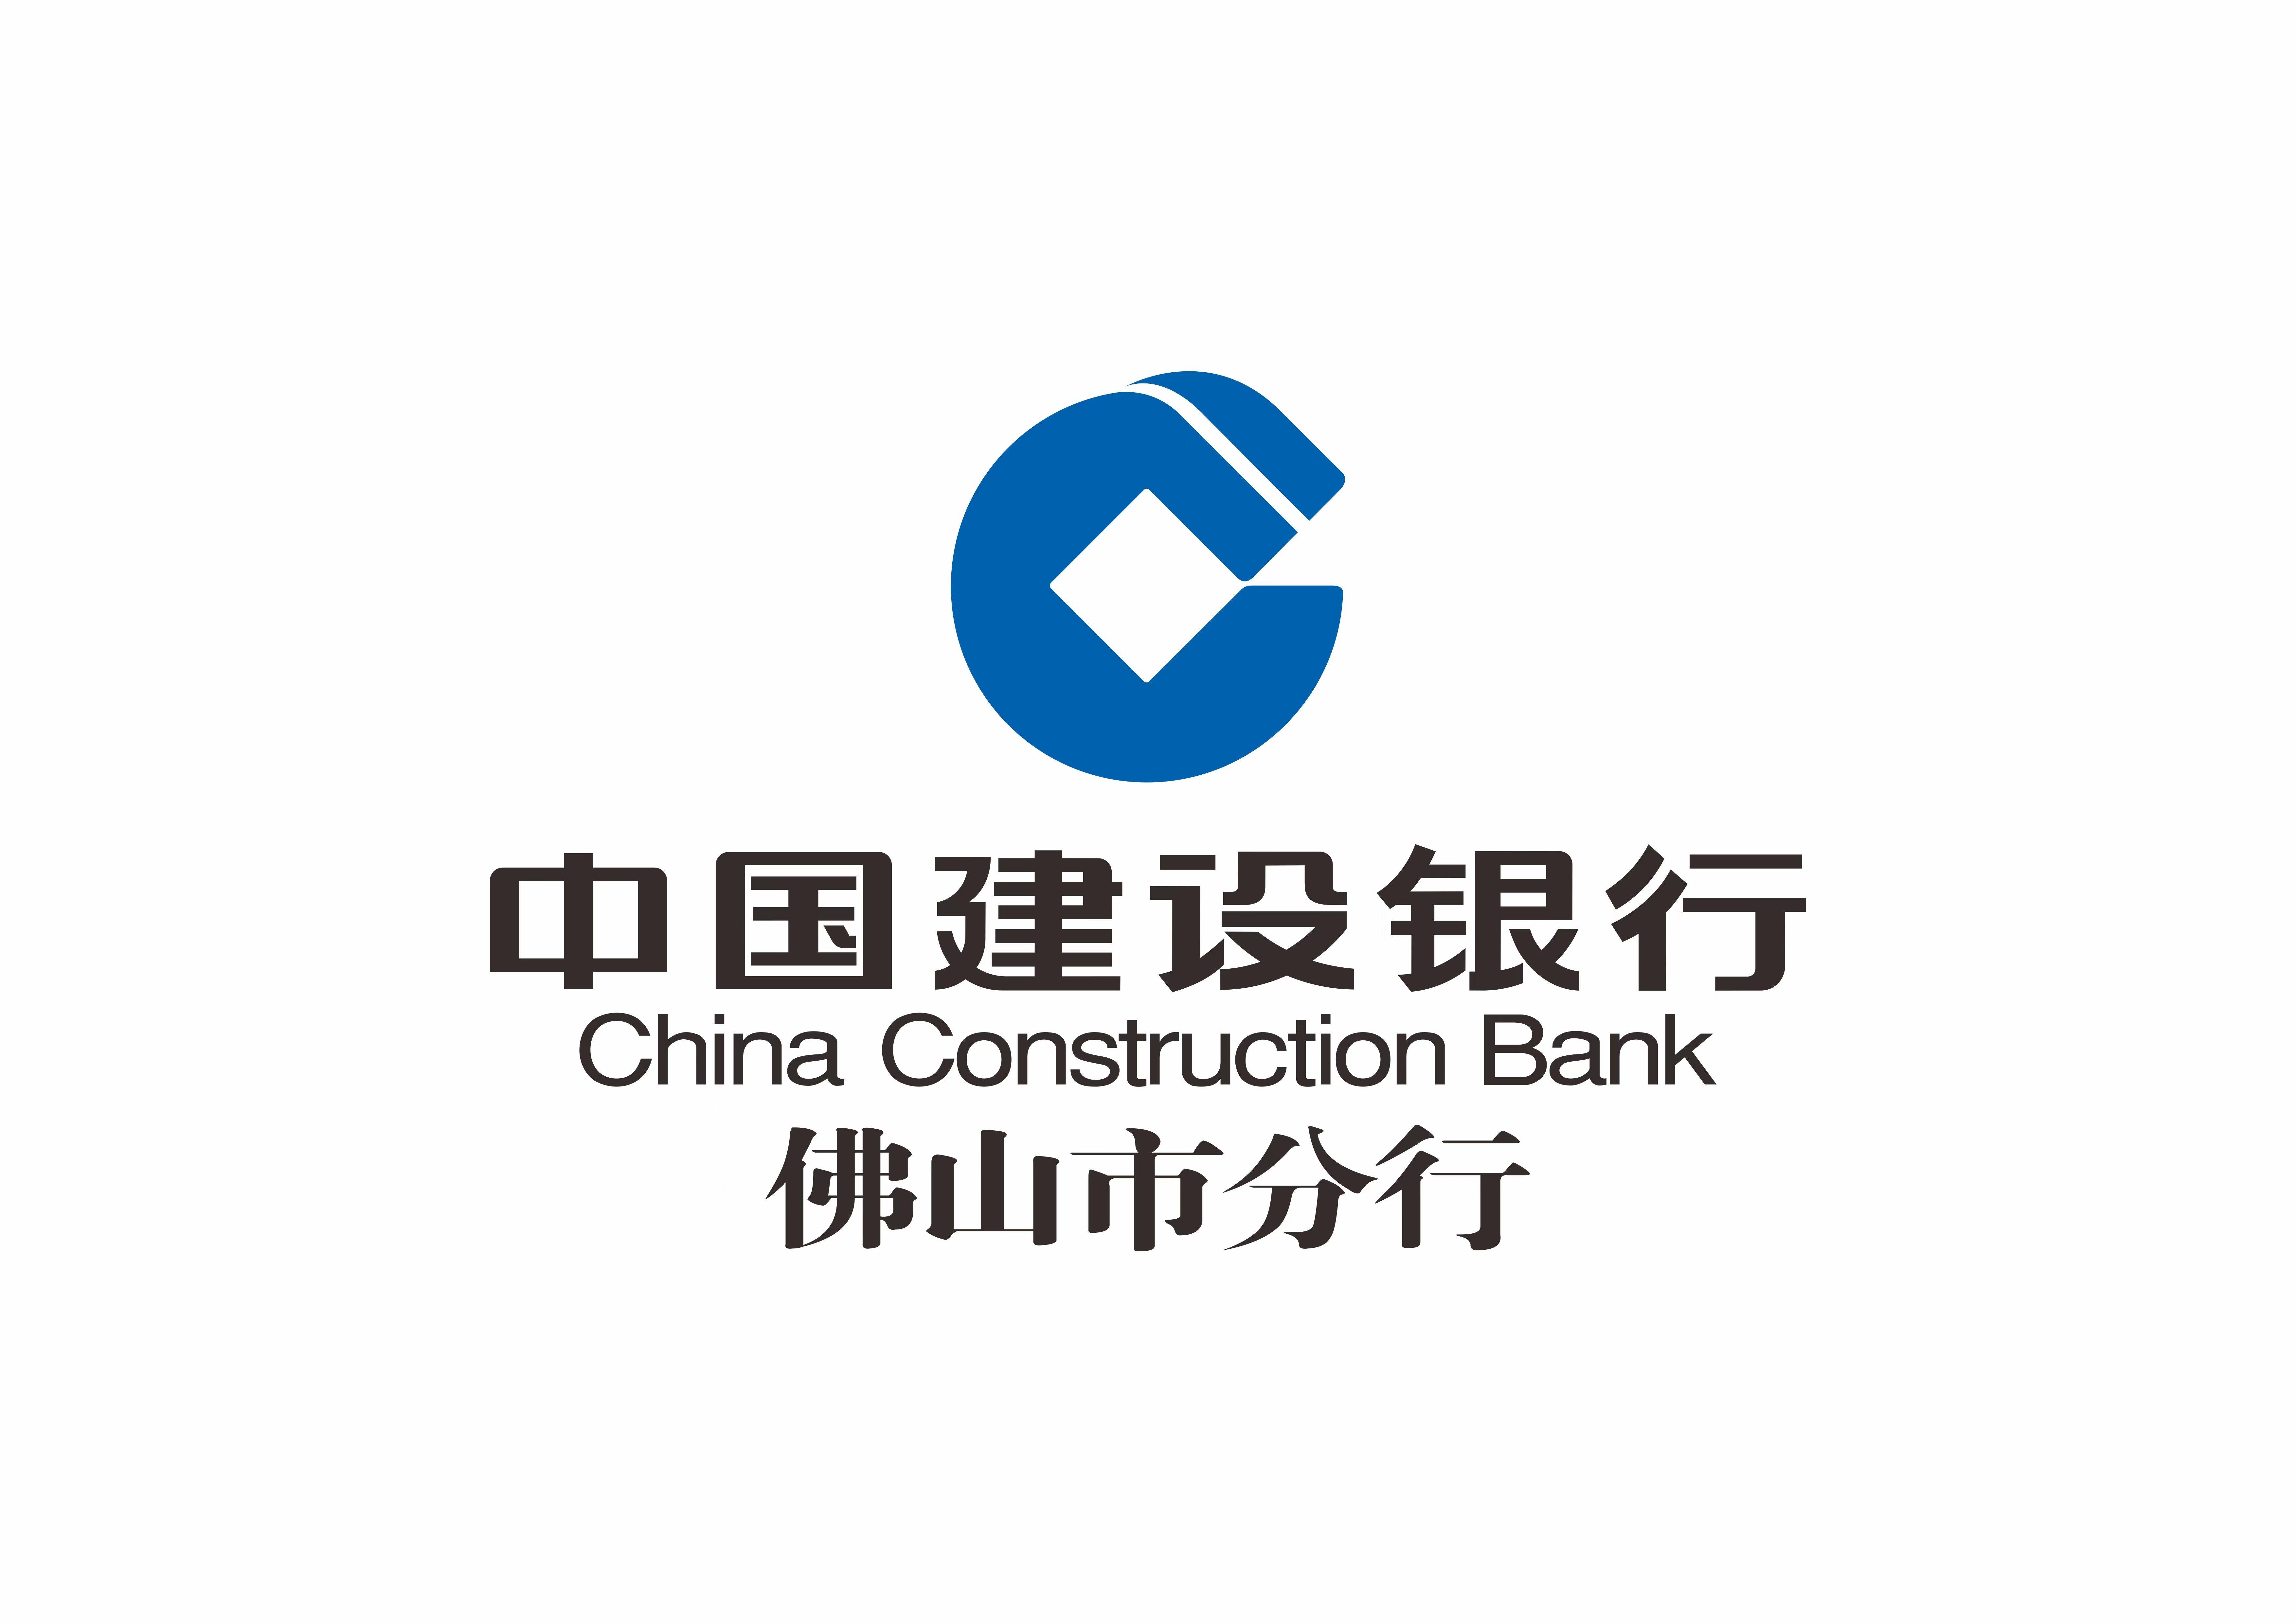 中国建设银行手机银行:中国建设银行佛山分行积极搭建乡村振兴服务体系